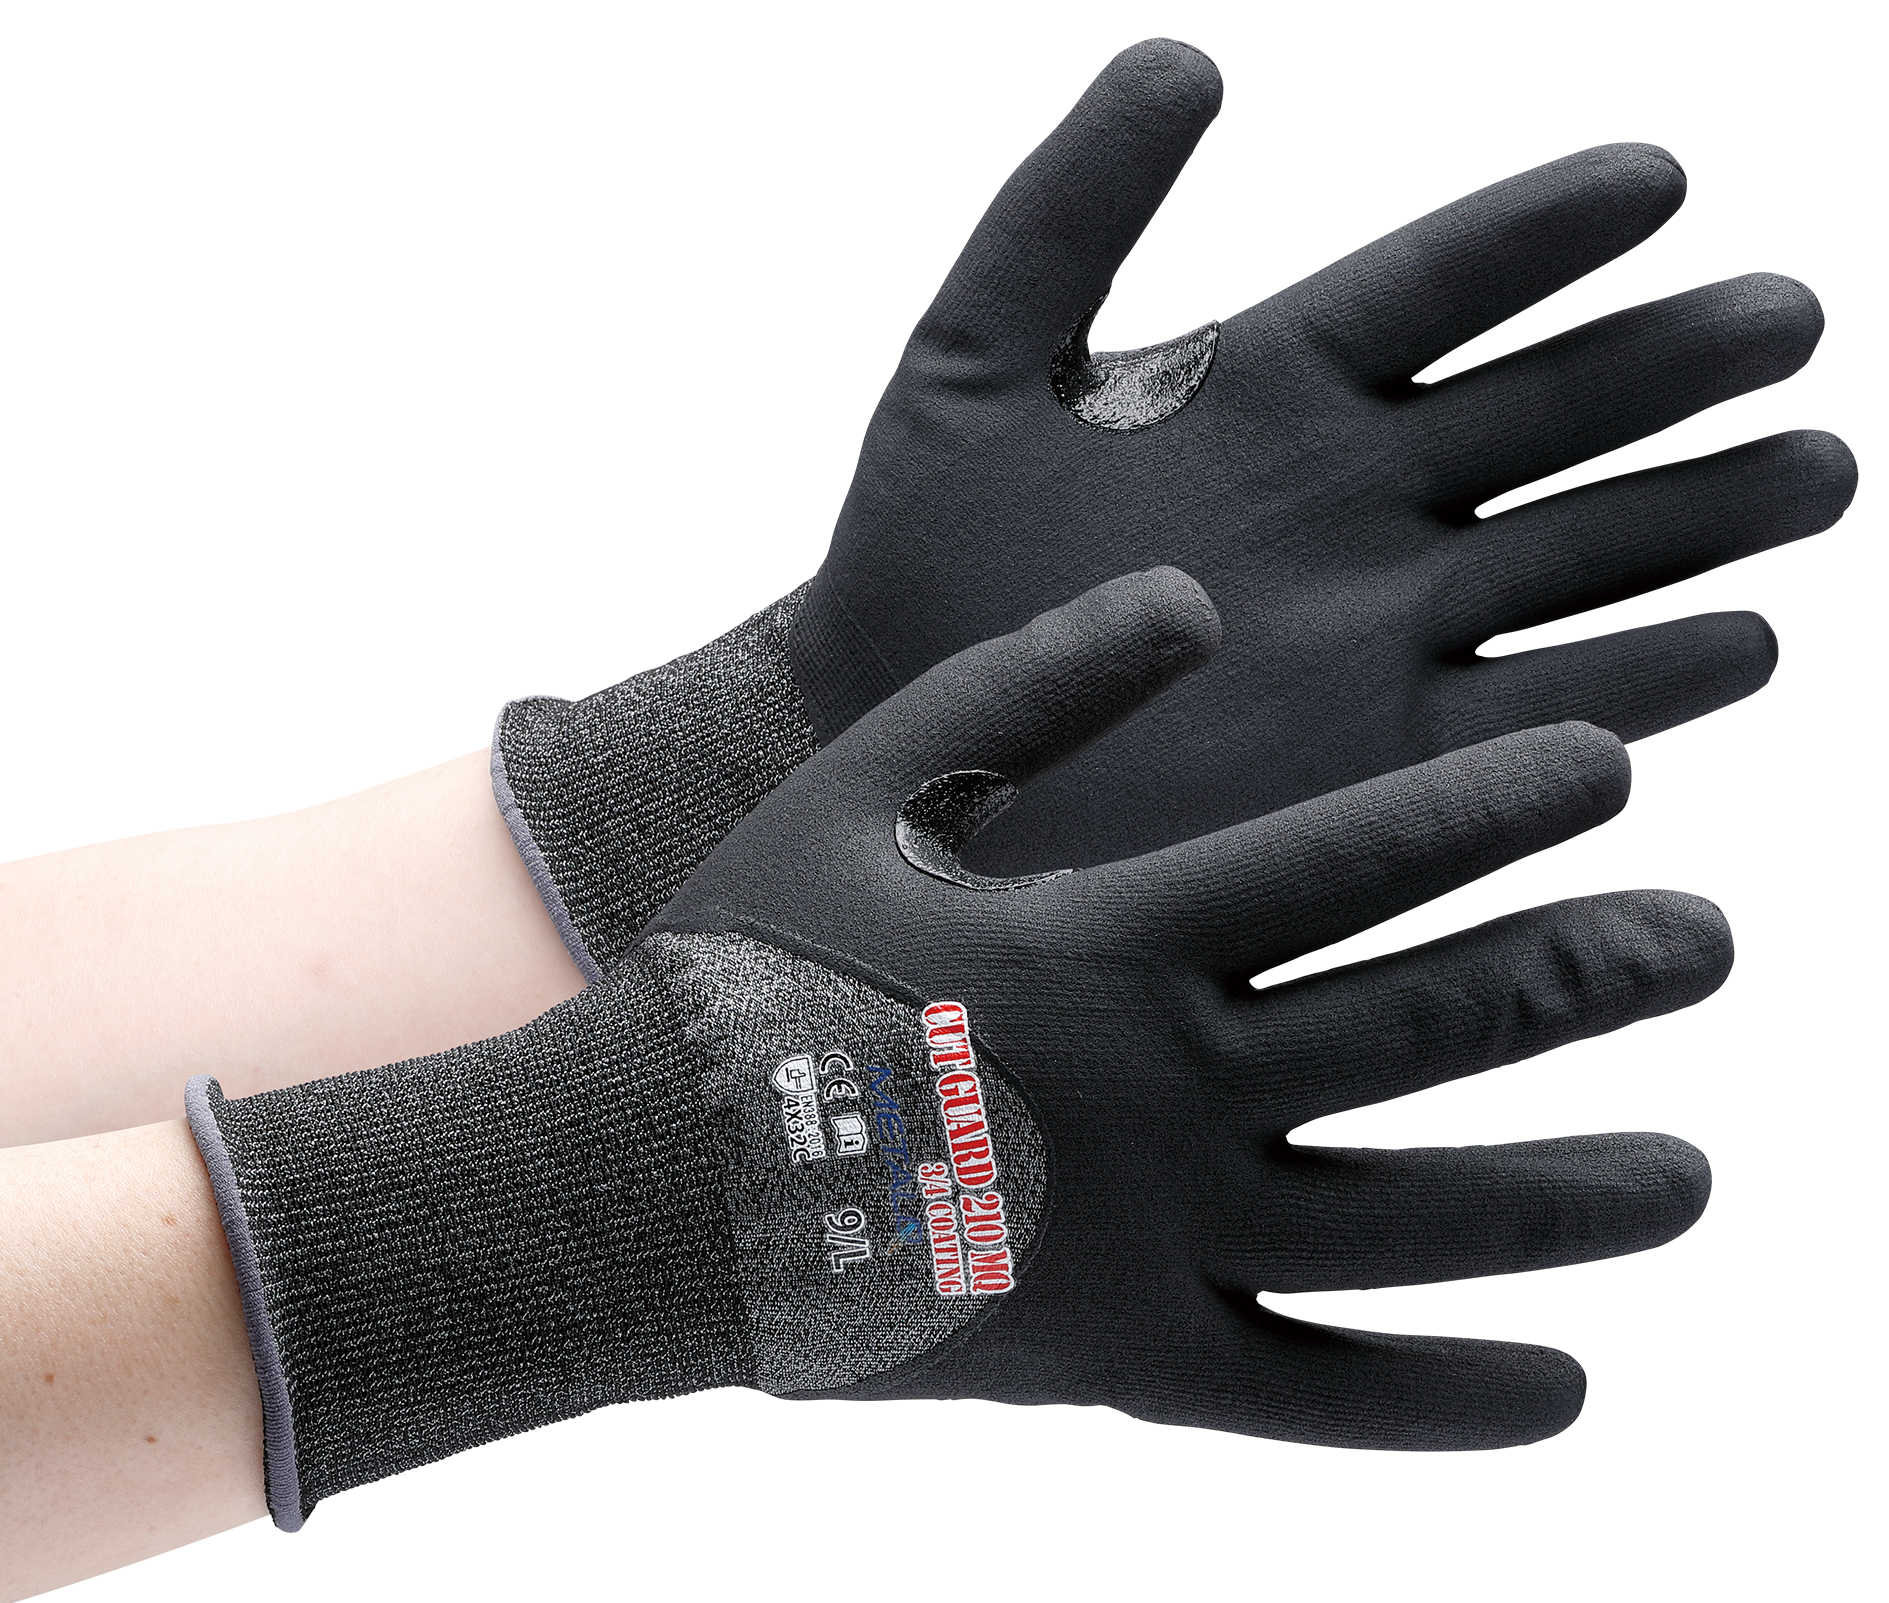 新素材「METALQ®」を使った極薄手耐切創性手袋など、 好評の「カットガードMETALQ」シリーズに新モデル登場<br>～4分の3コーティングモデルで、さまざまな業界ニーズに対応～